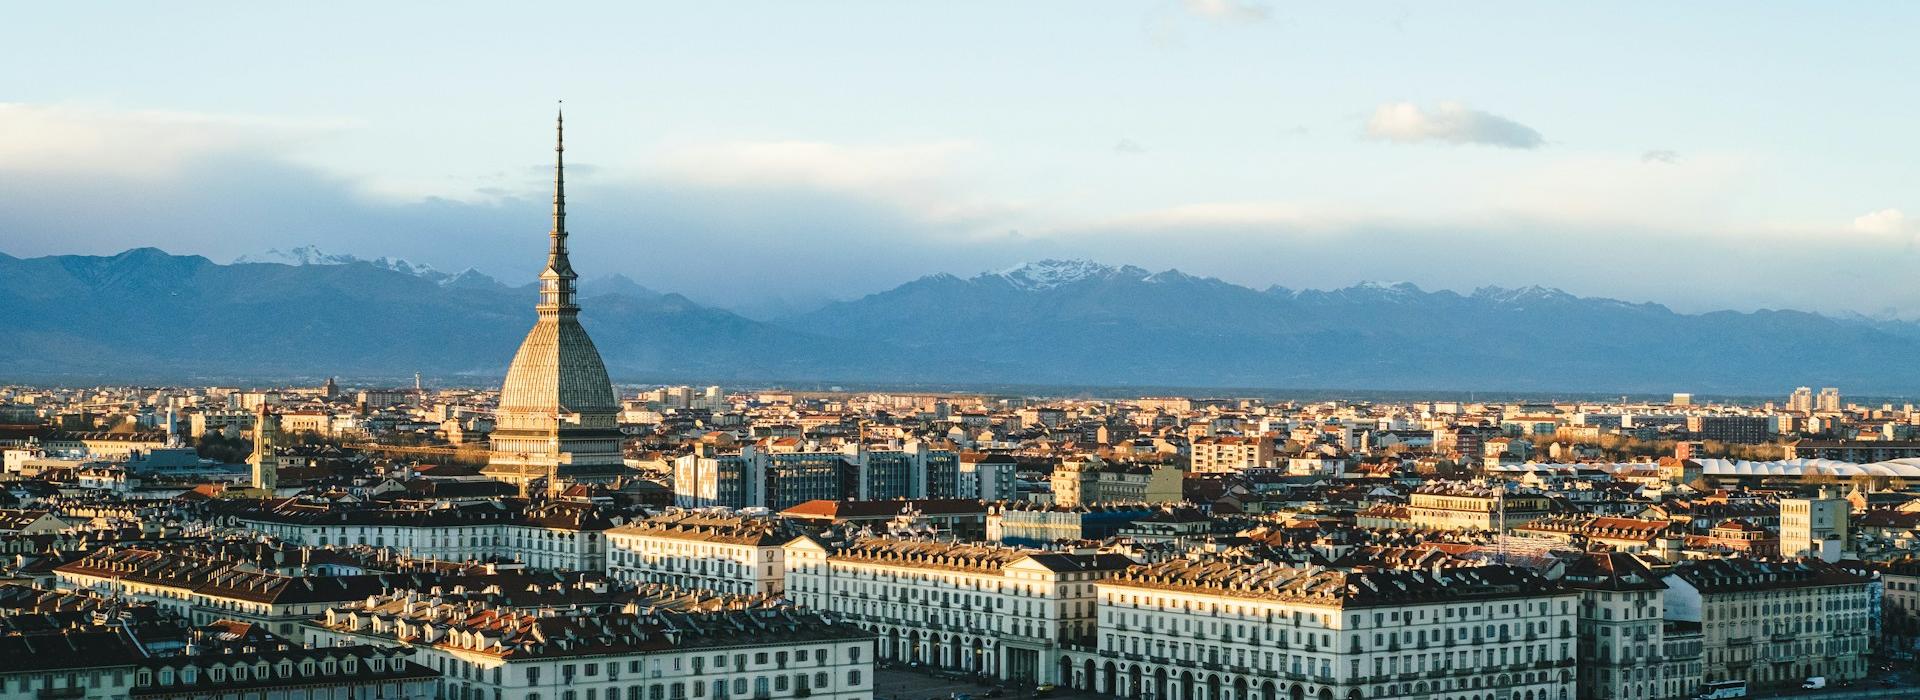 Piacenza – Turin